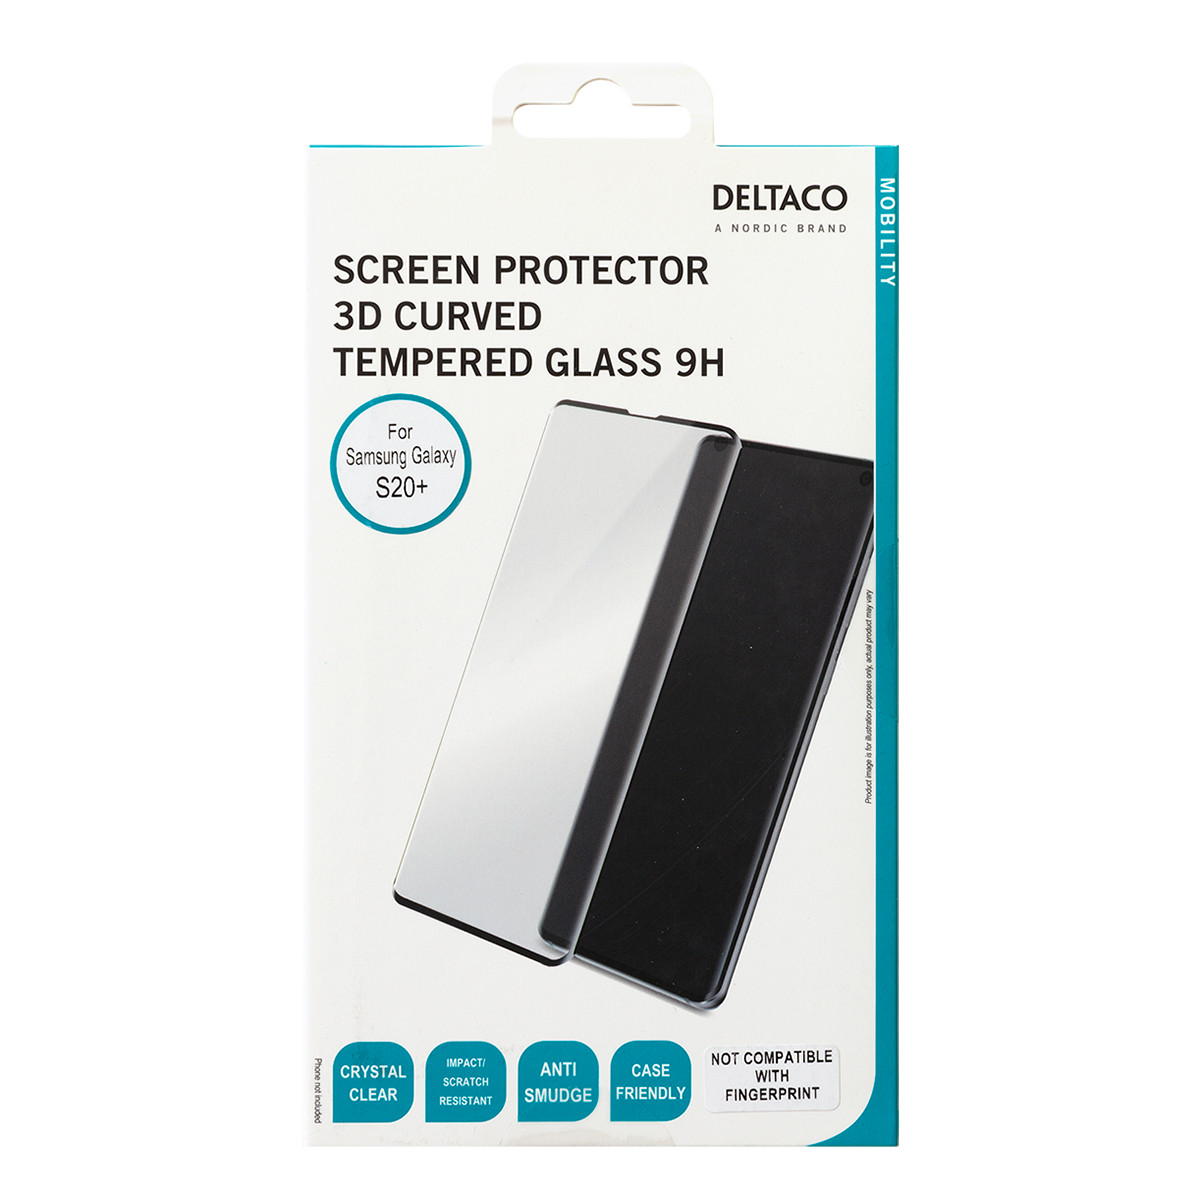 DELTACO skärmskydd i härdat glas till Samsung Galaxy S20+